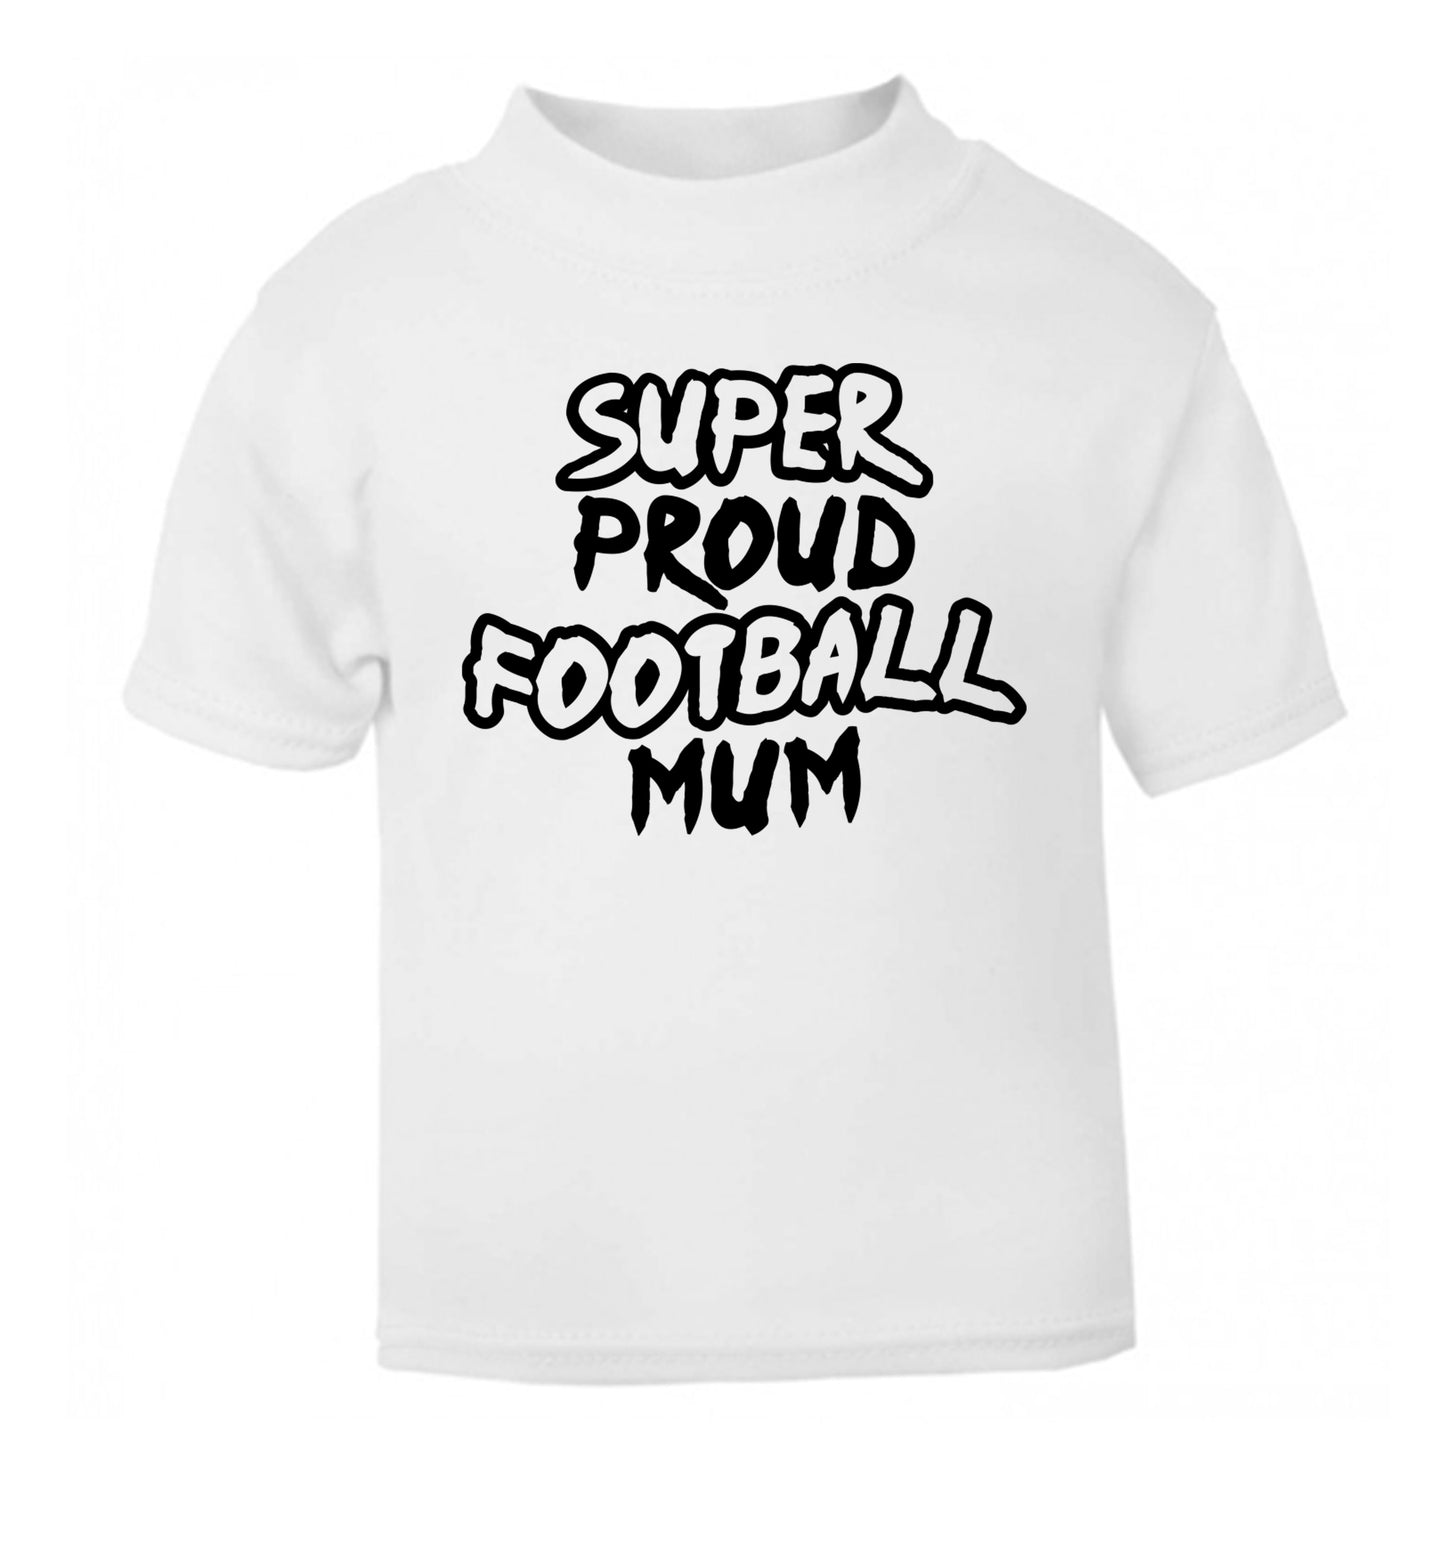 Super proud football mum white Baby Toddler Tshirt 2 Years